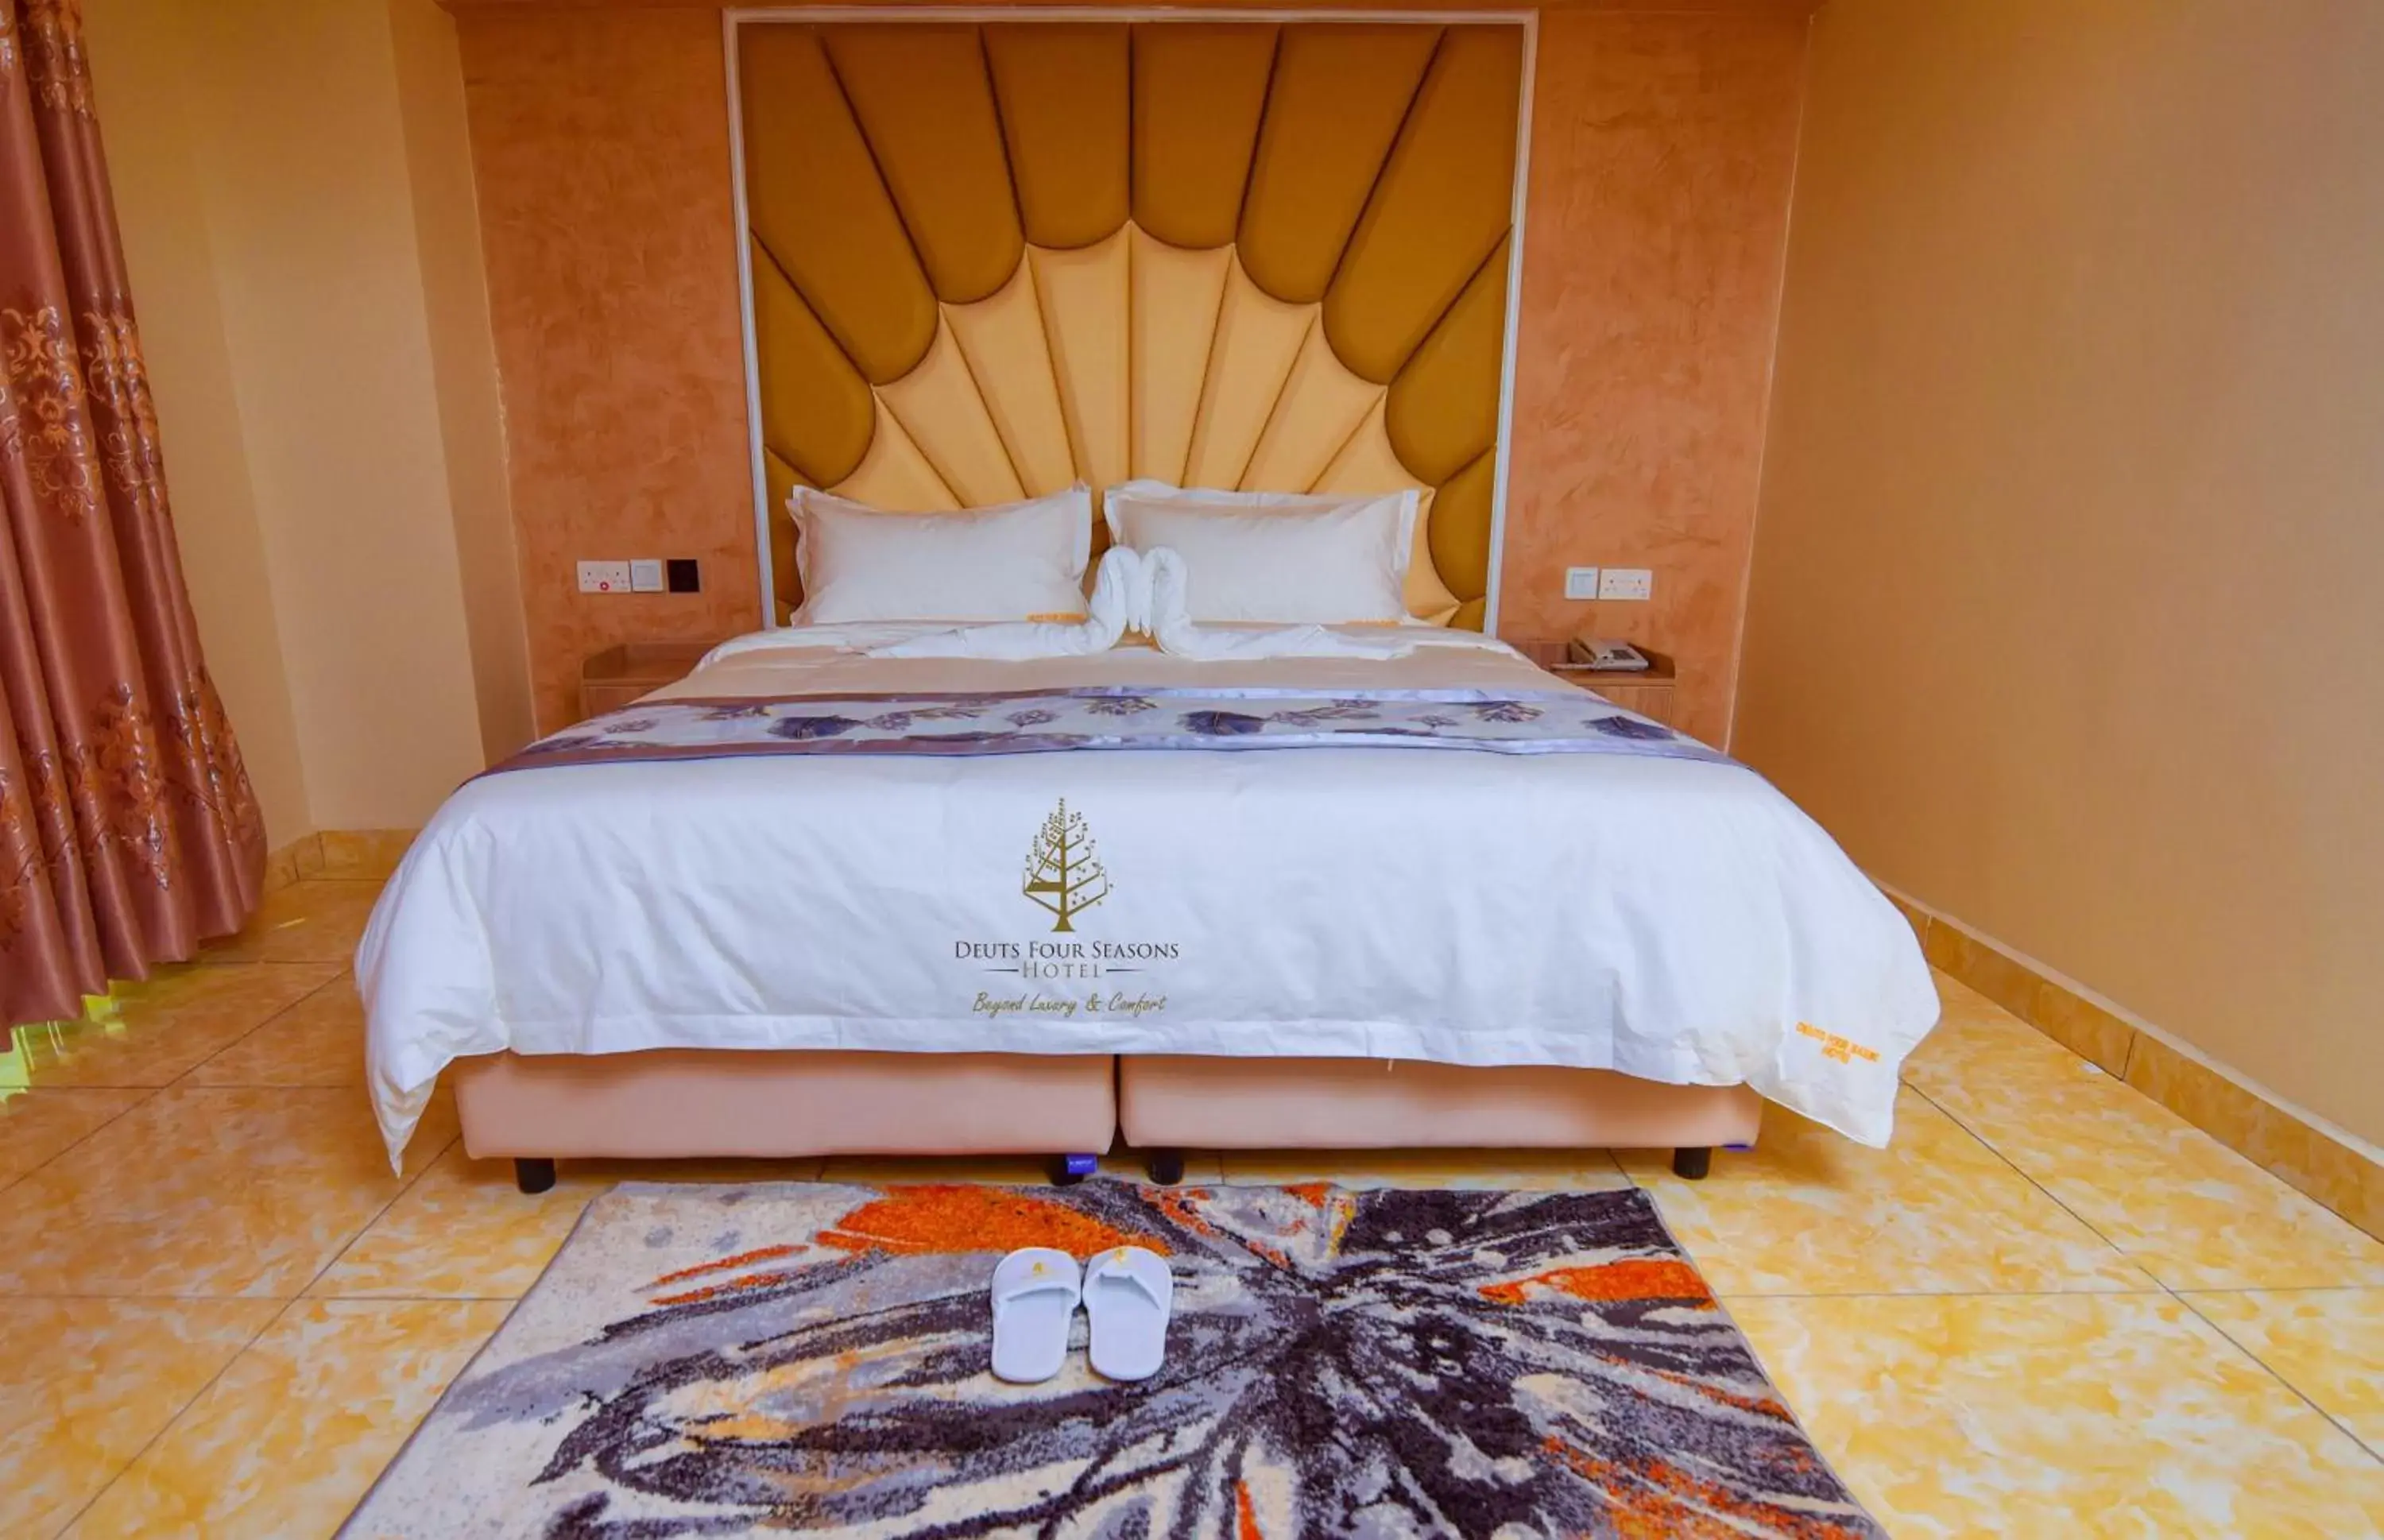 Bed in Deuts Four Seasons Hotel